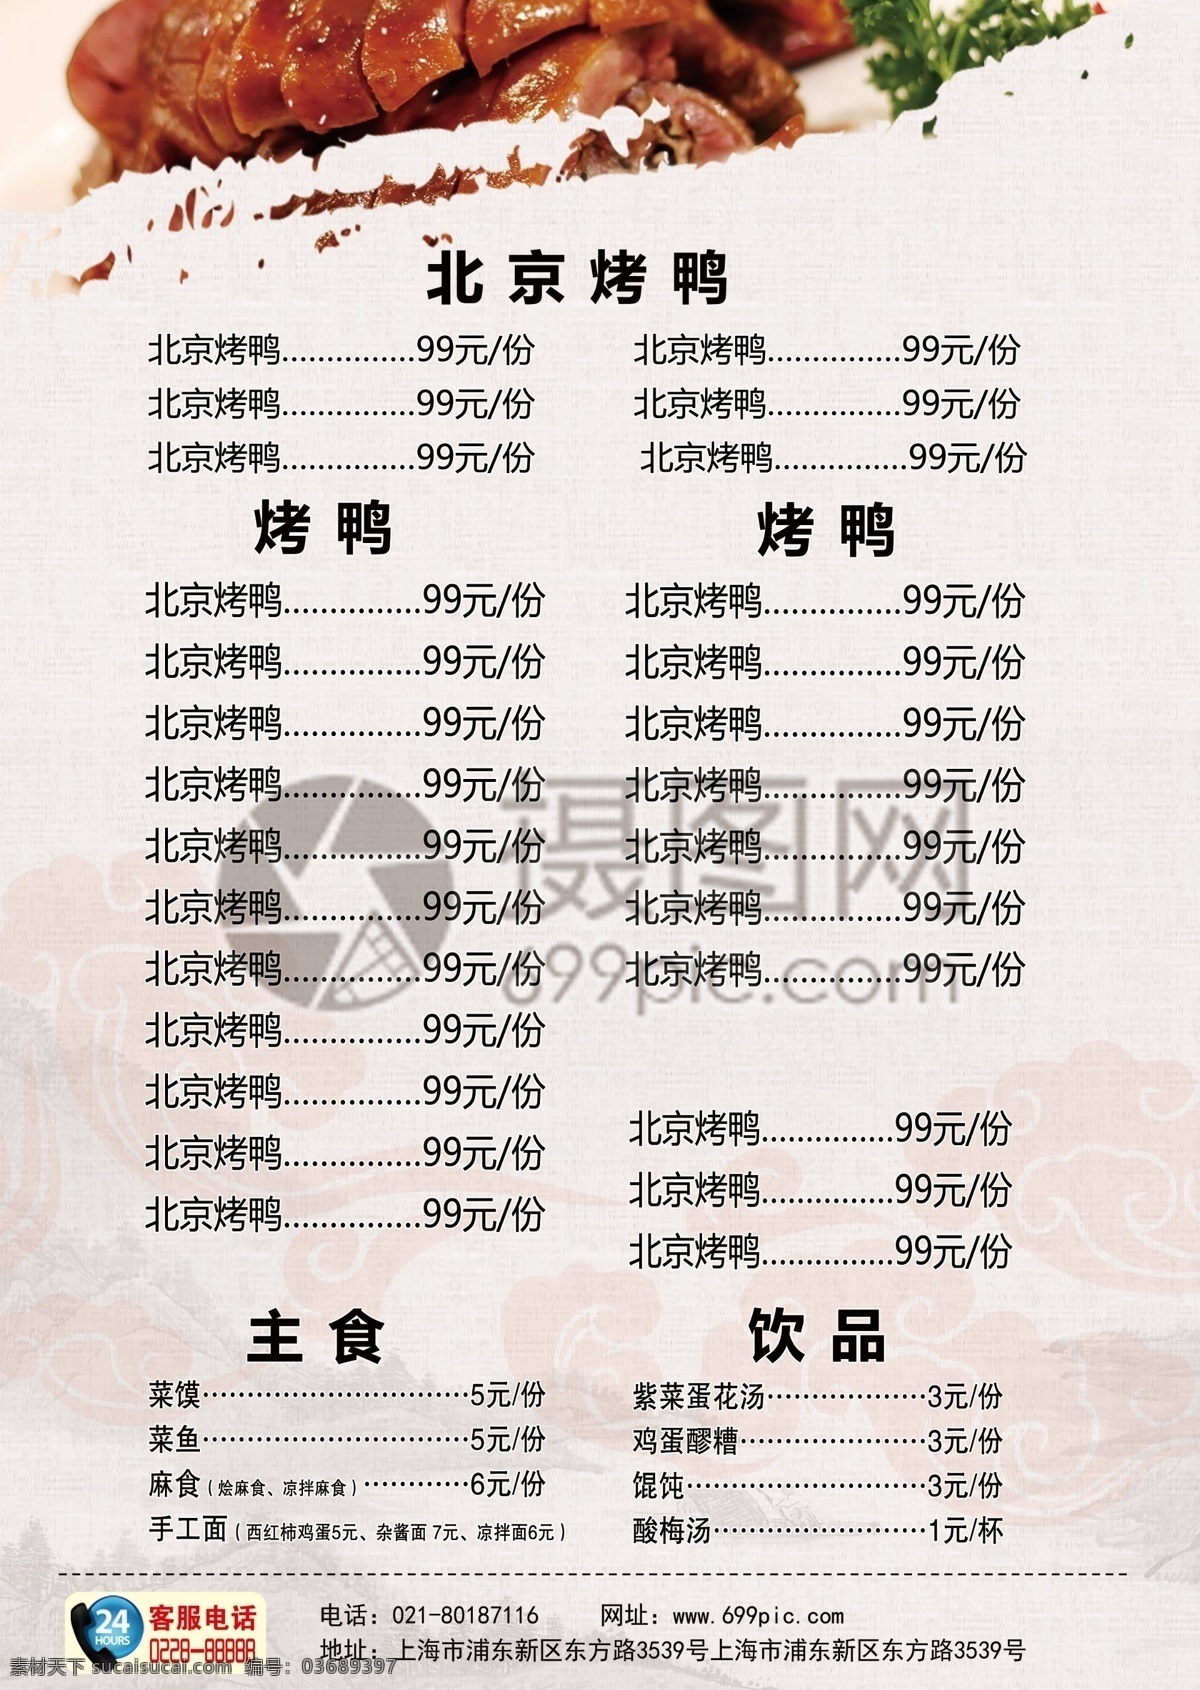 北京 烤鸭 美食 宣传单 北京烤鸭 美味 食物 食品 餐厅 餐饮单页 菜单 菜品